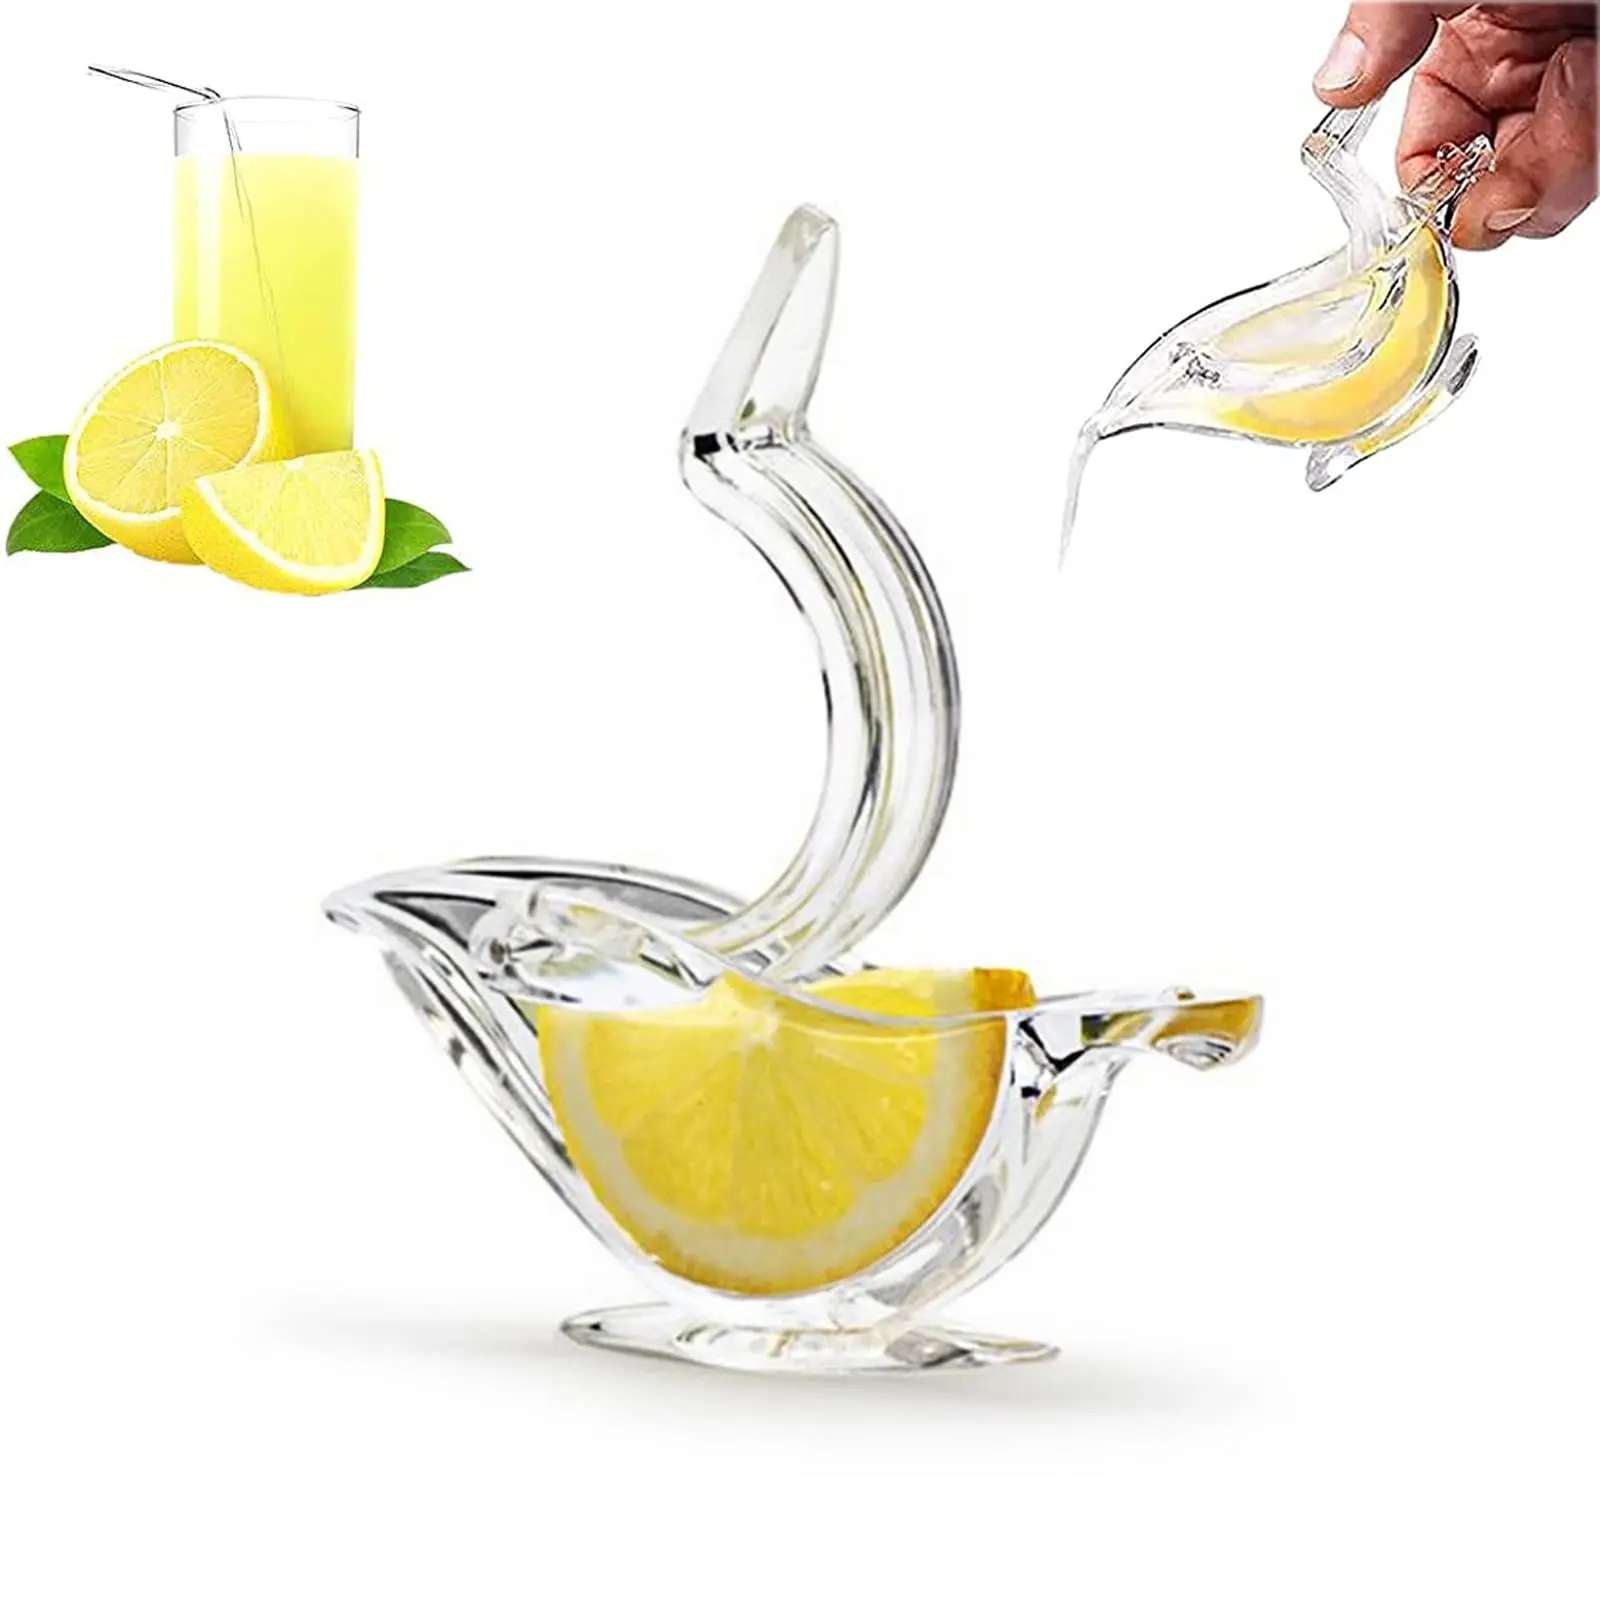 

Ручная Соковыжималка для лимона, акриловая соковыжималка для лимона, портативная прозрачная соковыжималка для фруктов в форме птицы, ручная соковыжималка для апельсина, лимона, лайма